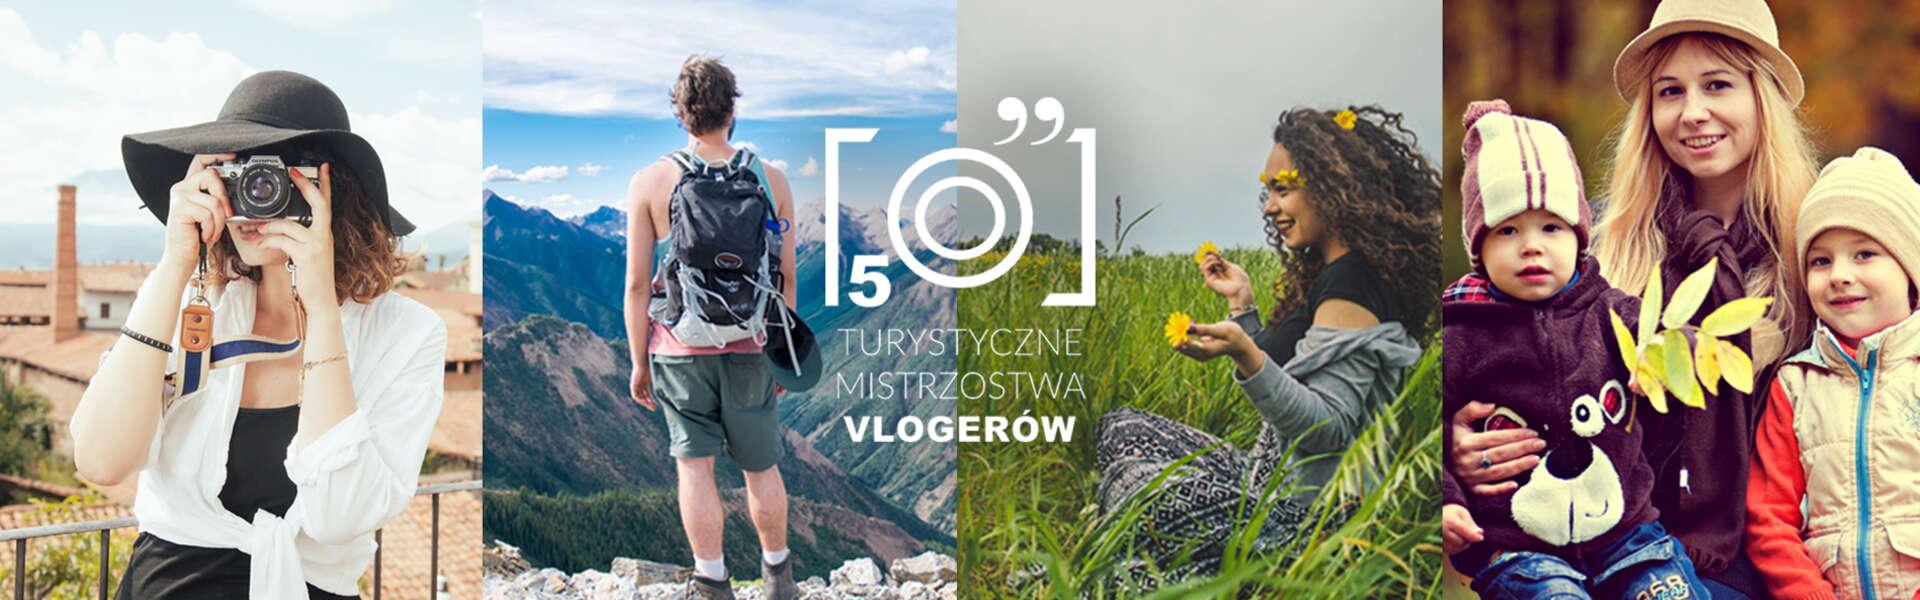 Изображение: Zagłosuj na Małopolskę - V Turystyczne Mistrzostwa Vlogerów!